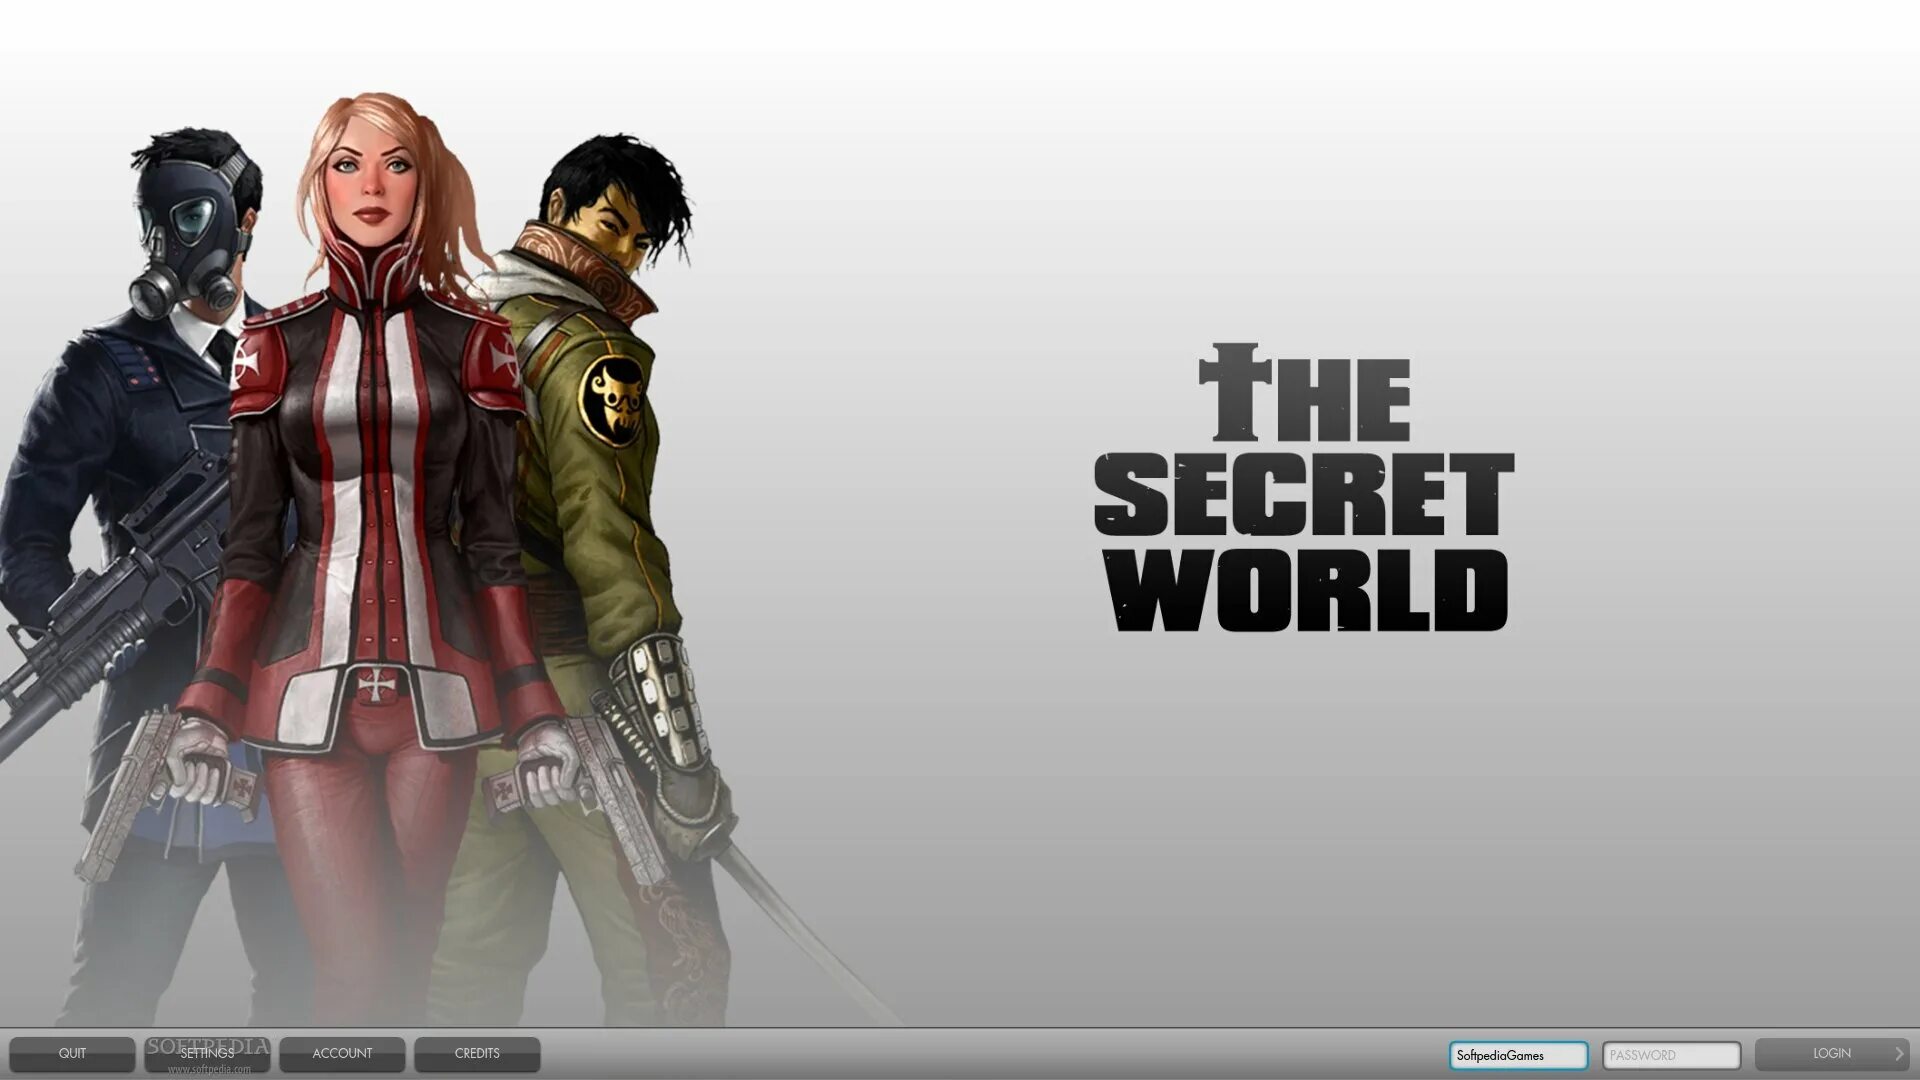 Www secret. The Secret World. The Secret World геймплей. Secret World mmo. The Secret World обои.